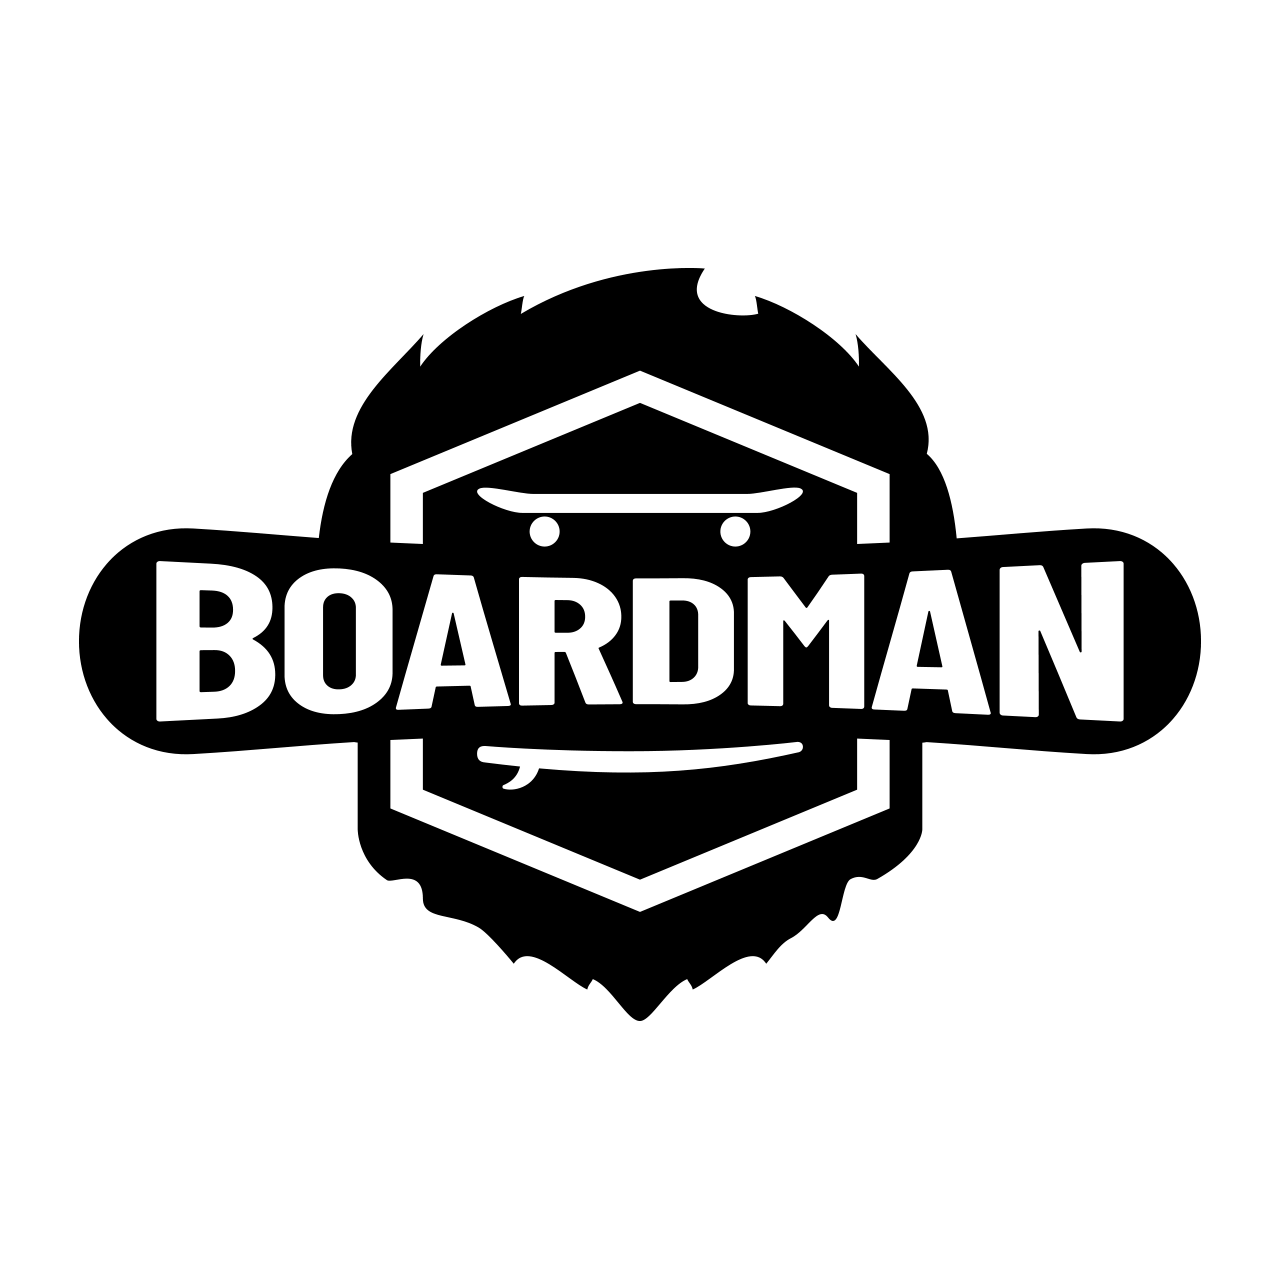 logo board man